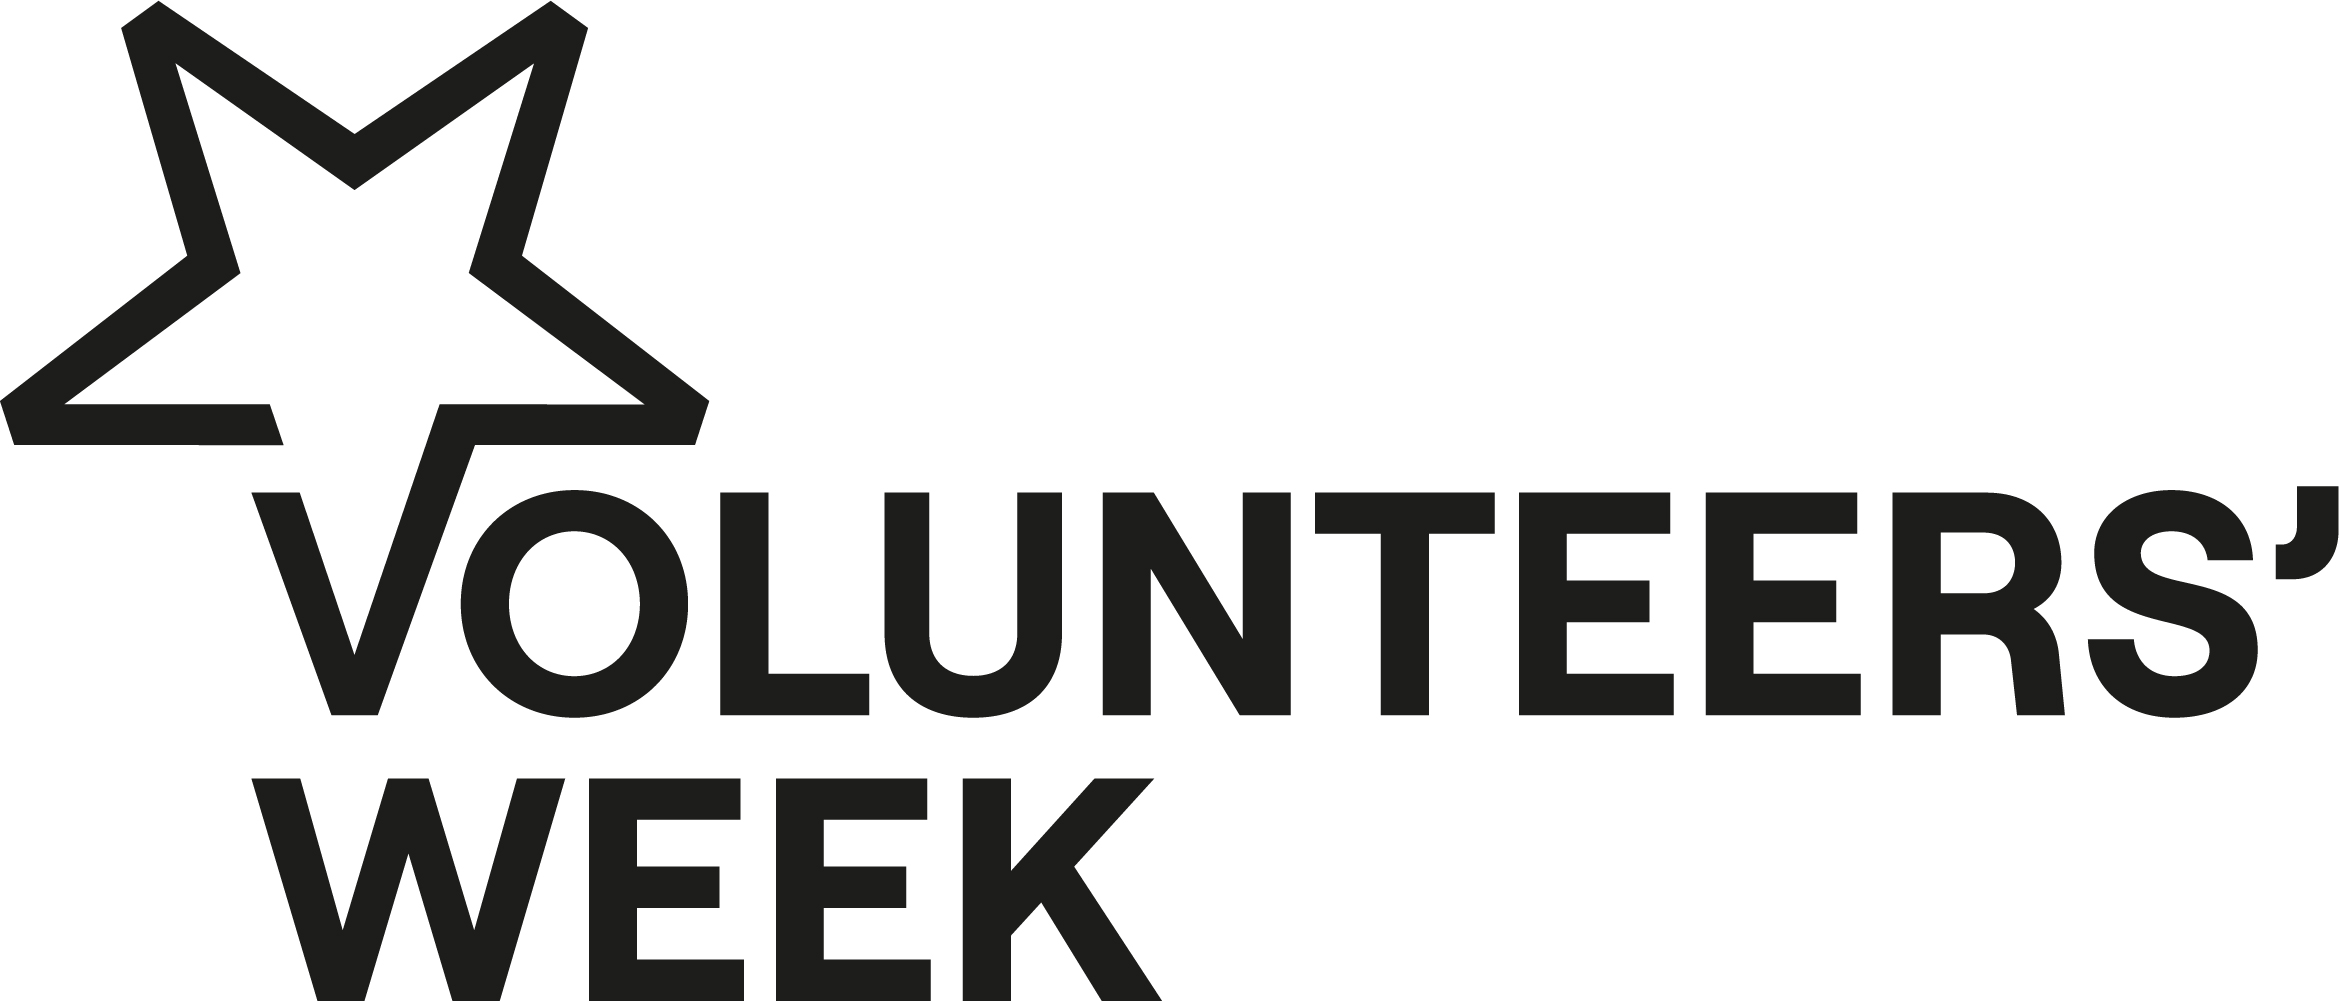 Volunteers week